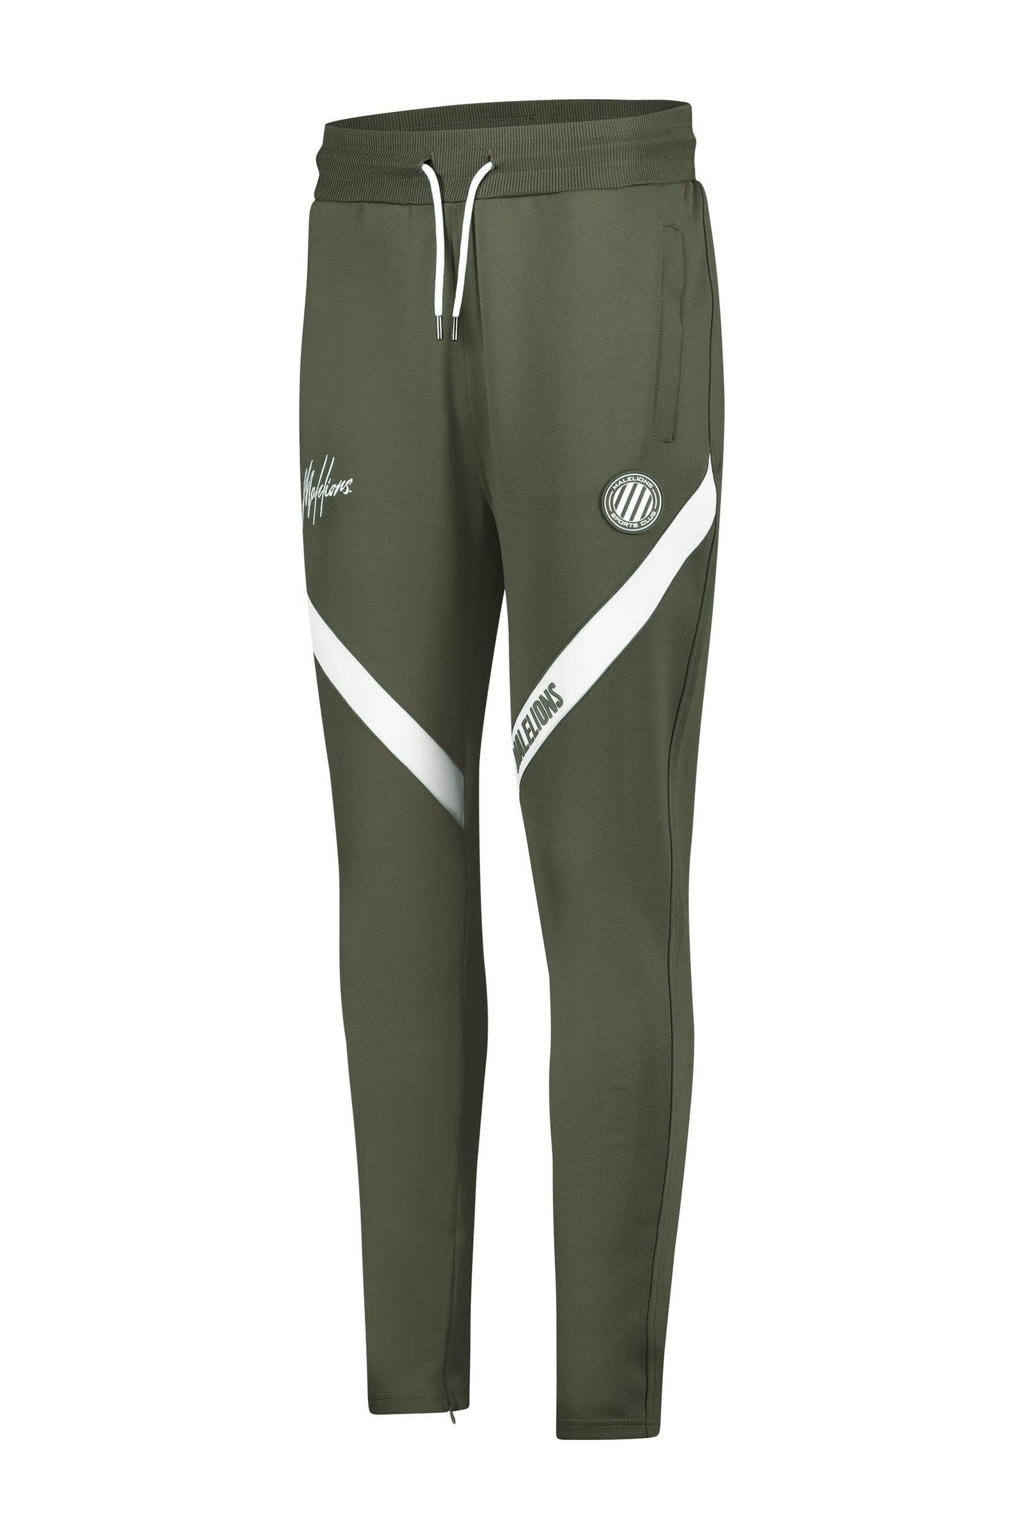 Groen en witte heren Malelions regular fit joggingbroek Trackpants Pre-Match van polyester met elastische tailleband met koord en logo dessin